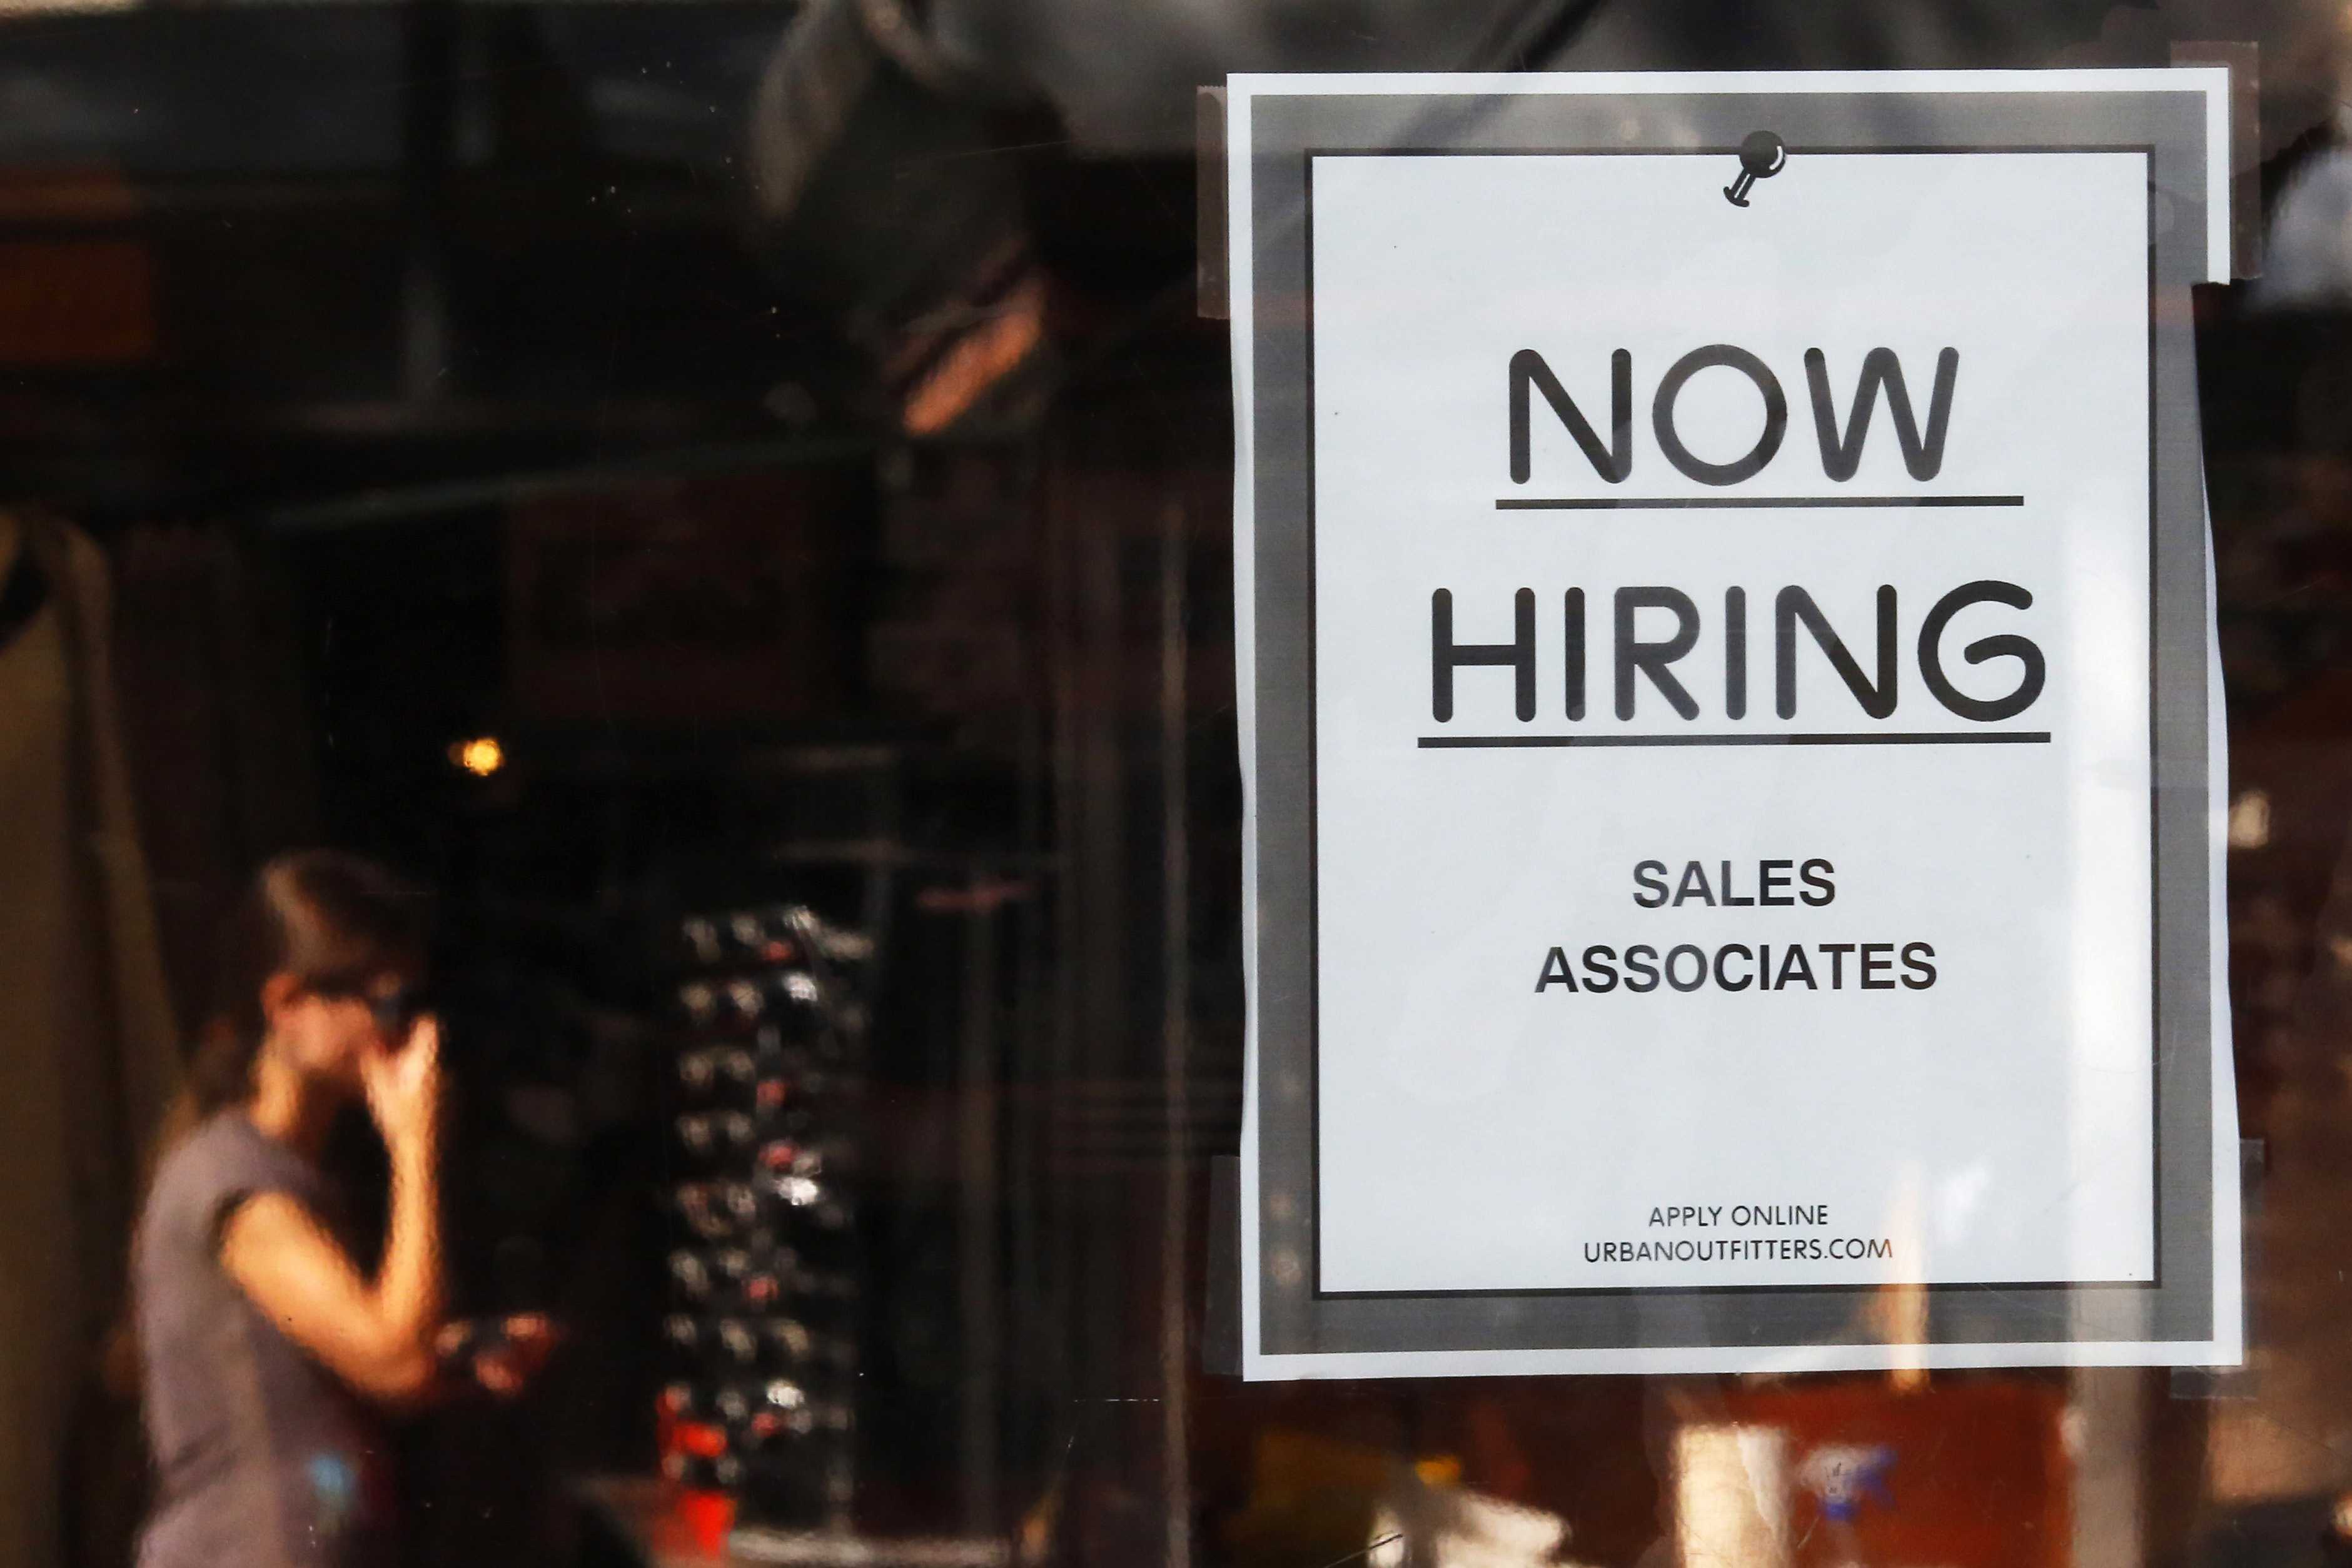 米新規失業保険申請、3000件増の21.9万件　予想若干上回る